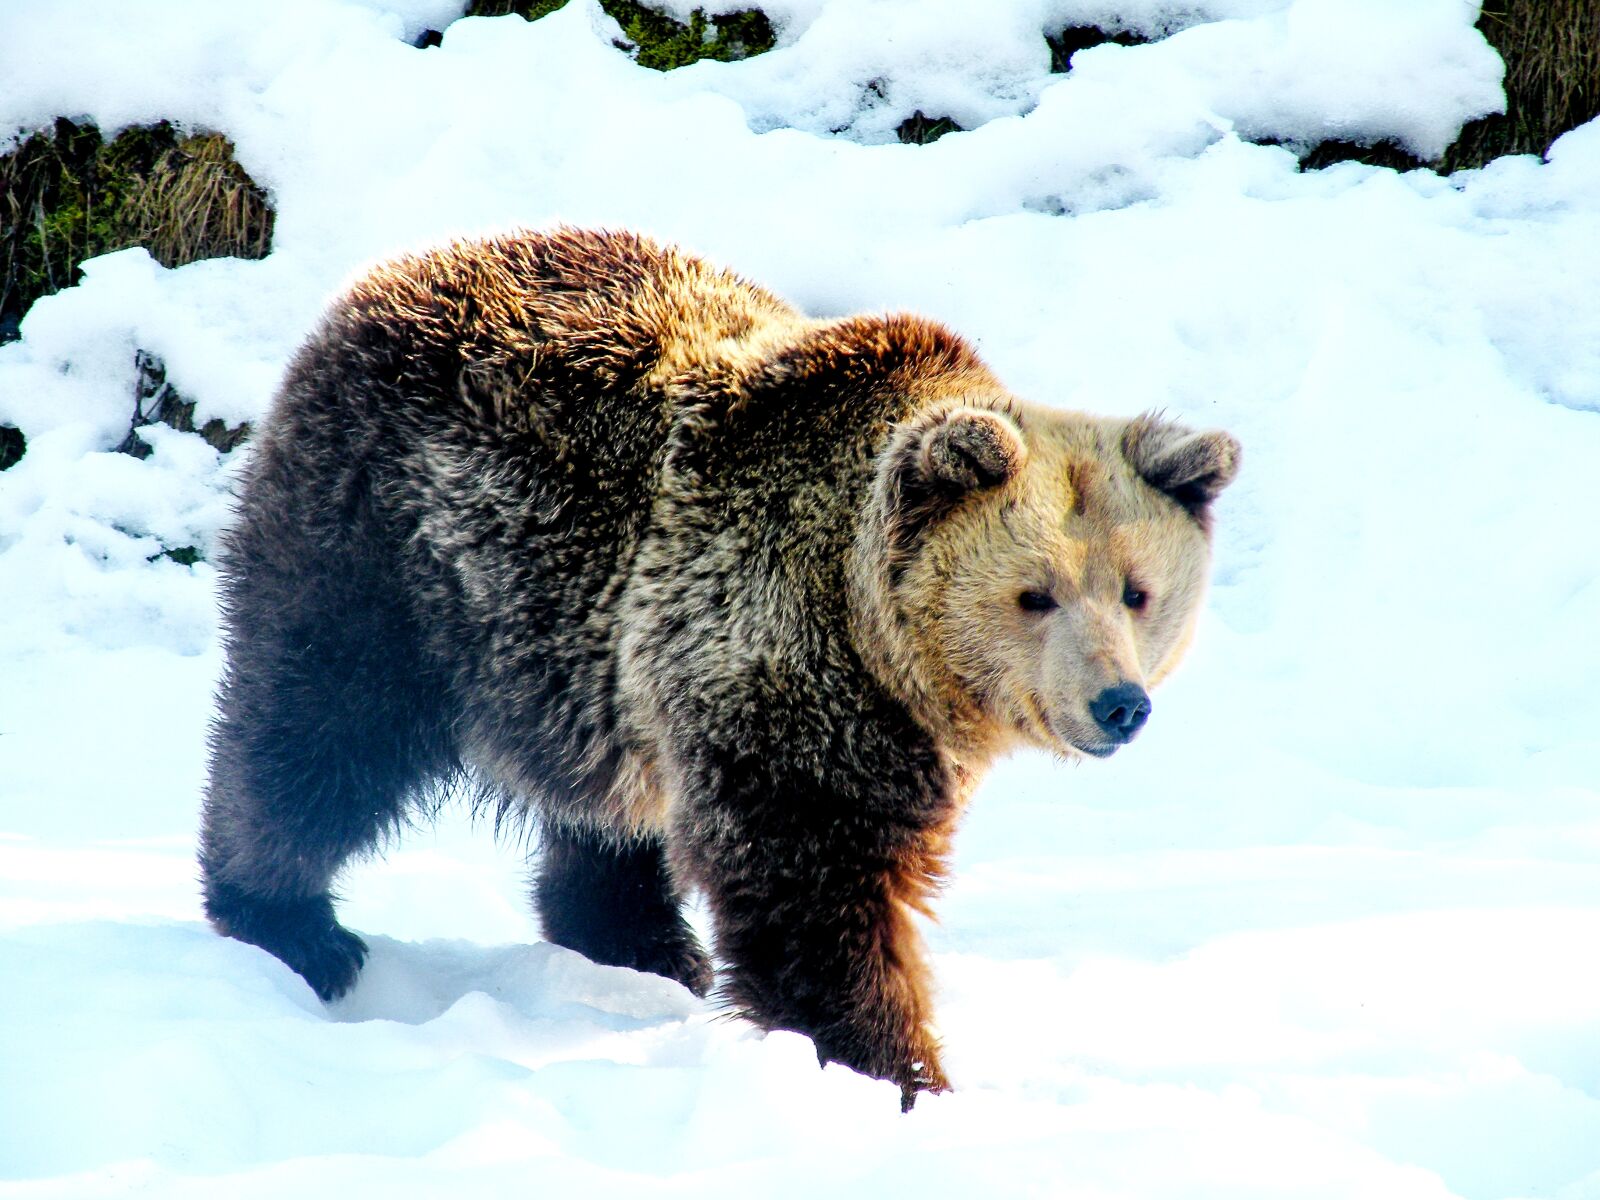 Nikon Coolpix P80 sample photo. Bear, snow, brown bear photography